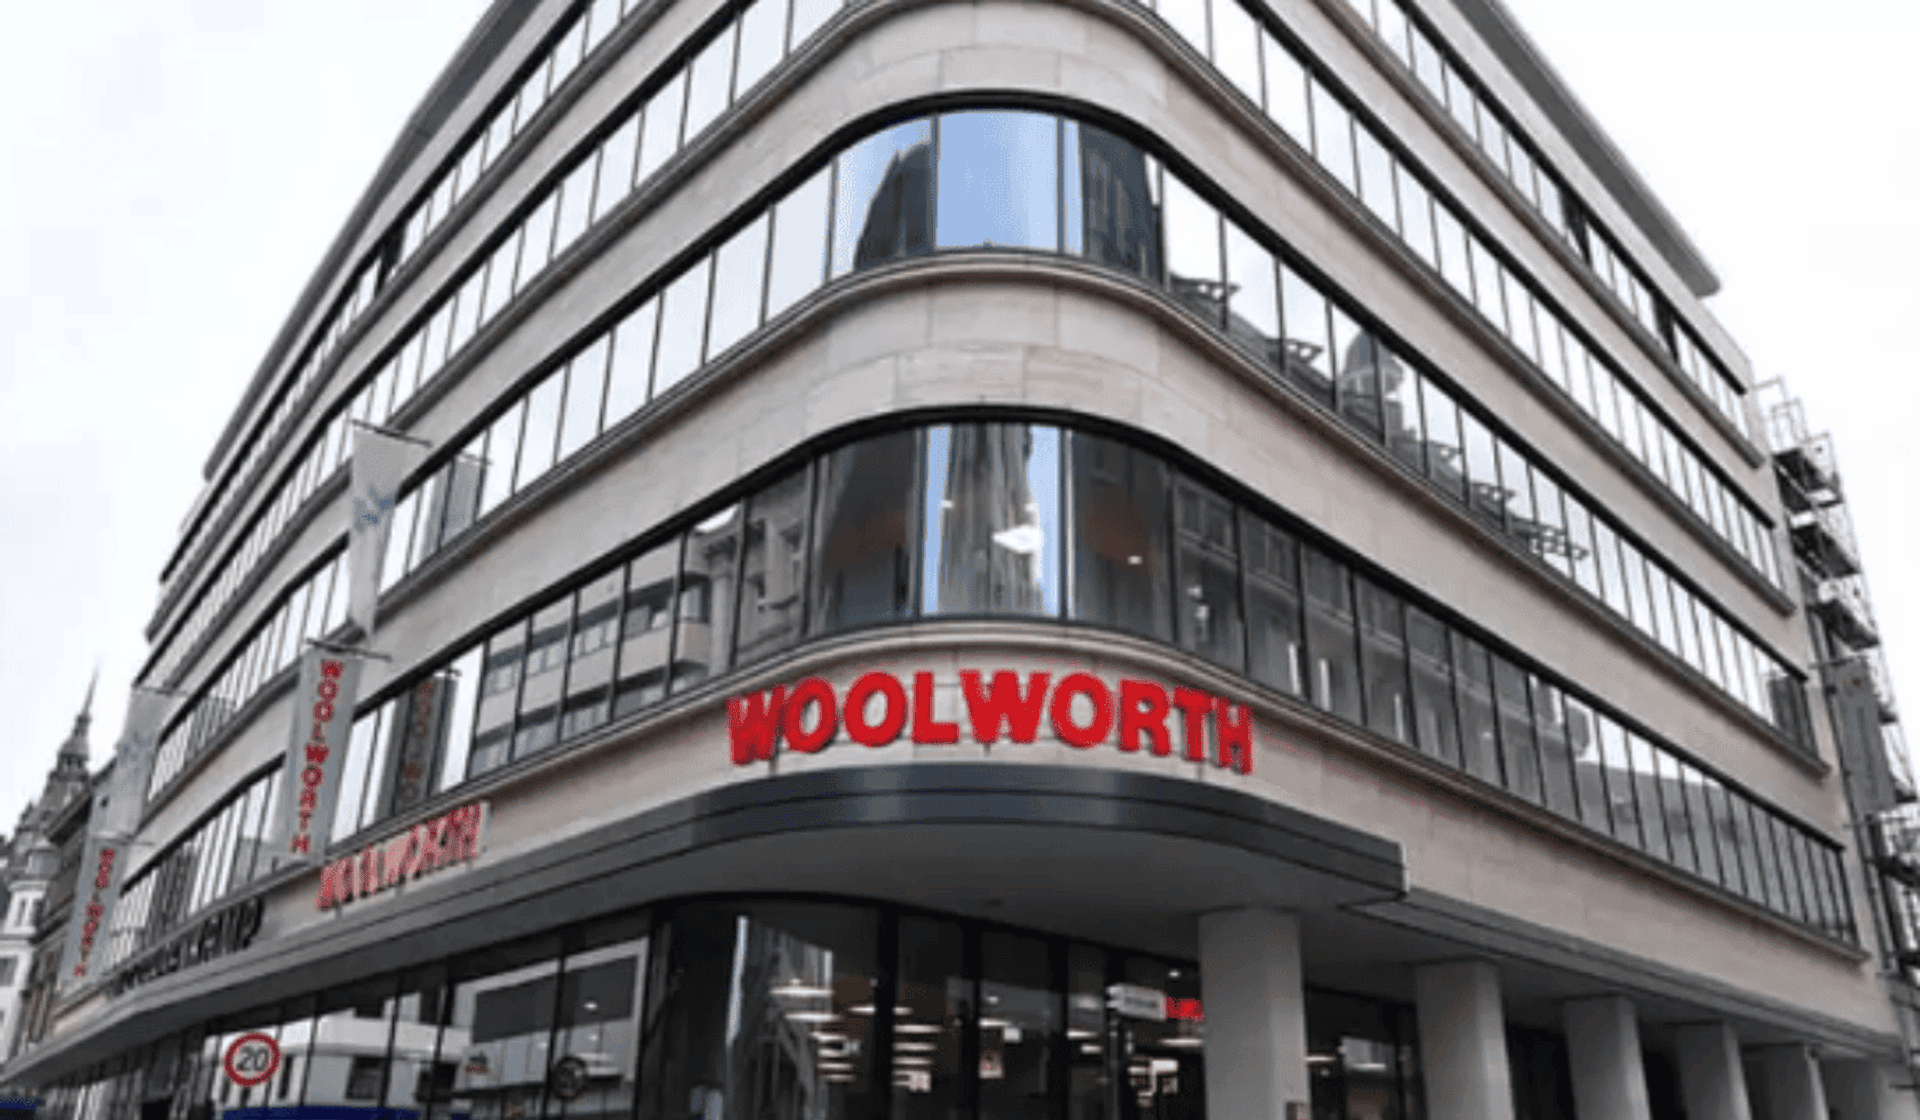  Woolworth wchodzi do Polski